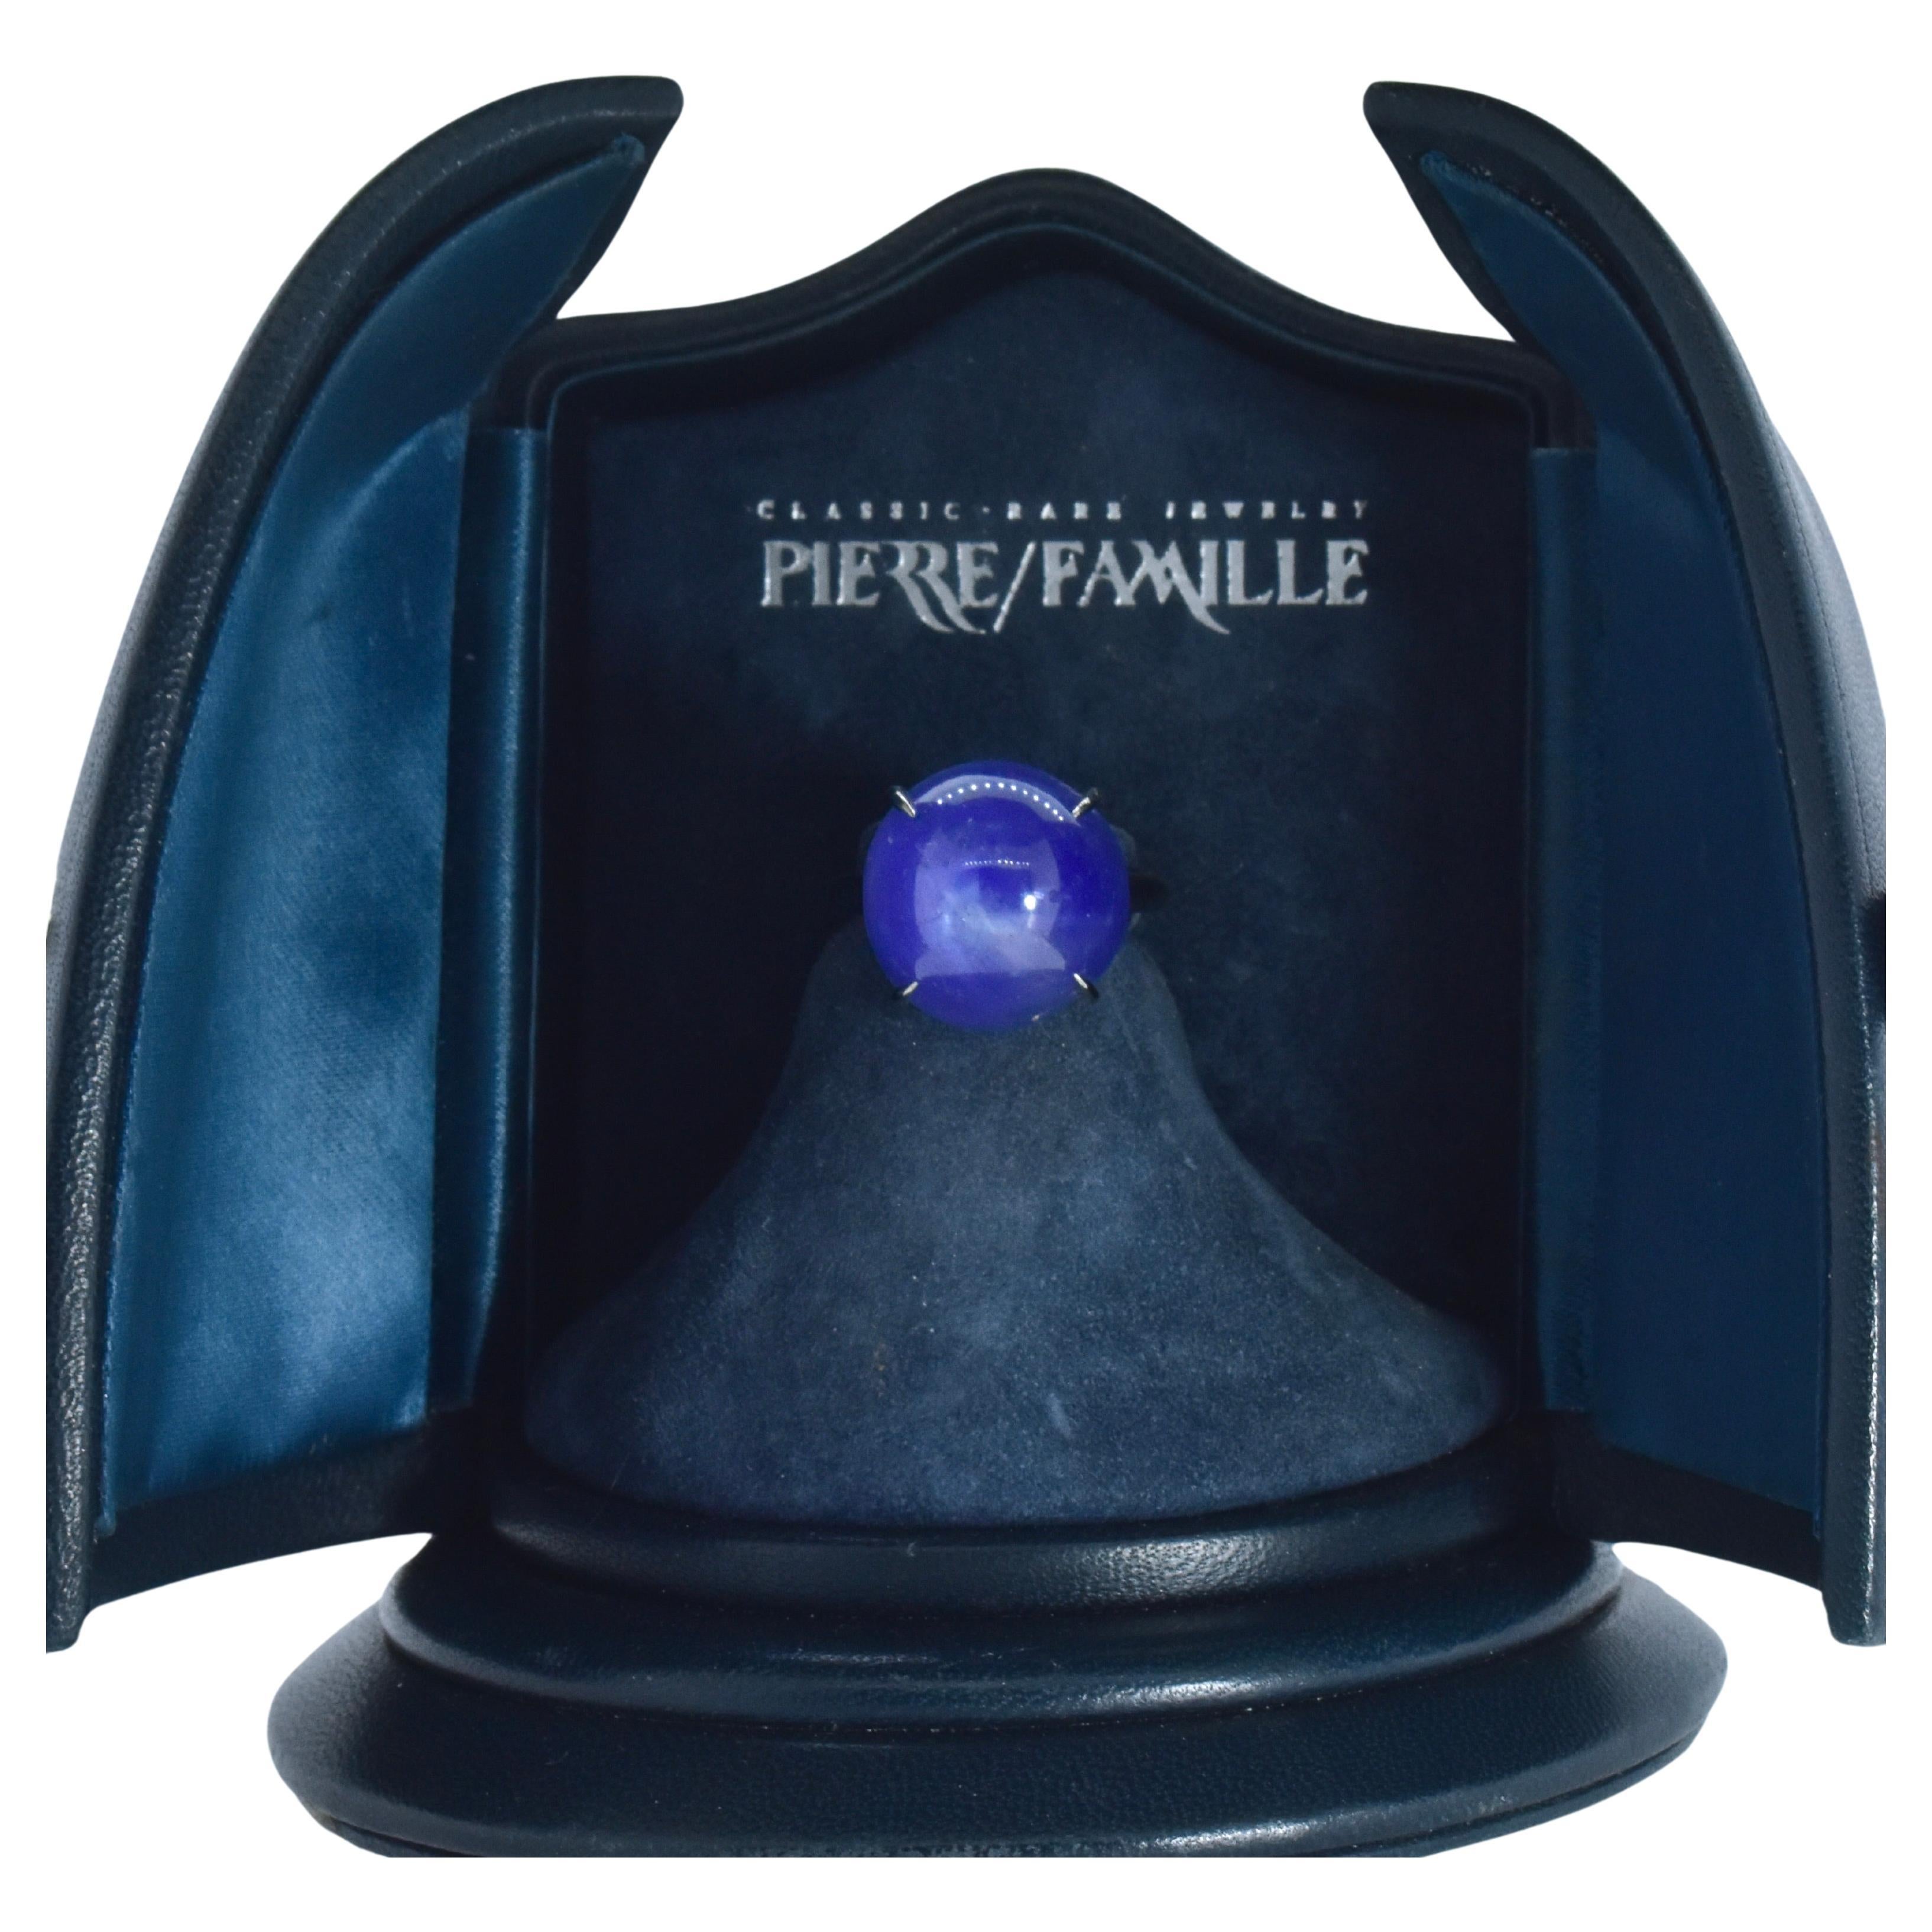 Sternsaphir, nicht erhitzt, und Platin Ring handgefertigt von Pierre/Famille.   Dieser Cabochon-Schliff  Der Sternsaphir wiegt 32 Karat und hat eine angenehme mittelblaue Farbe mit einem Hauch von Violett. Die handgefertigte Platinfassung ist